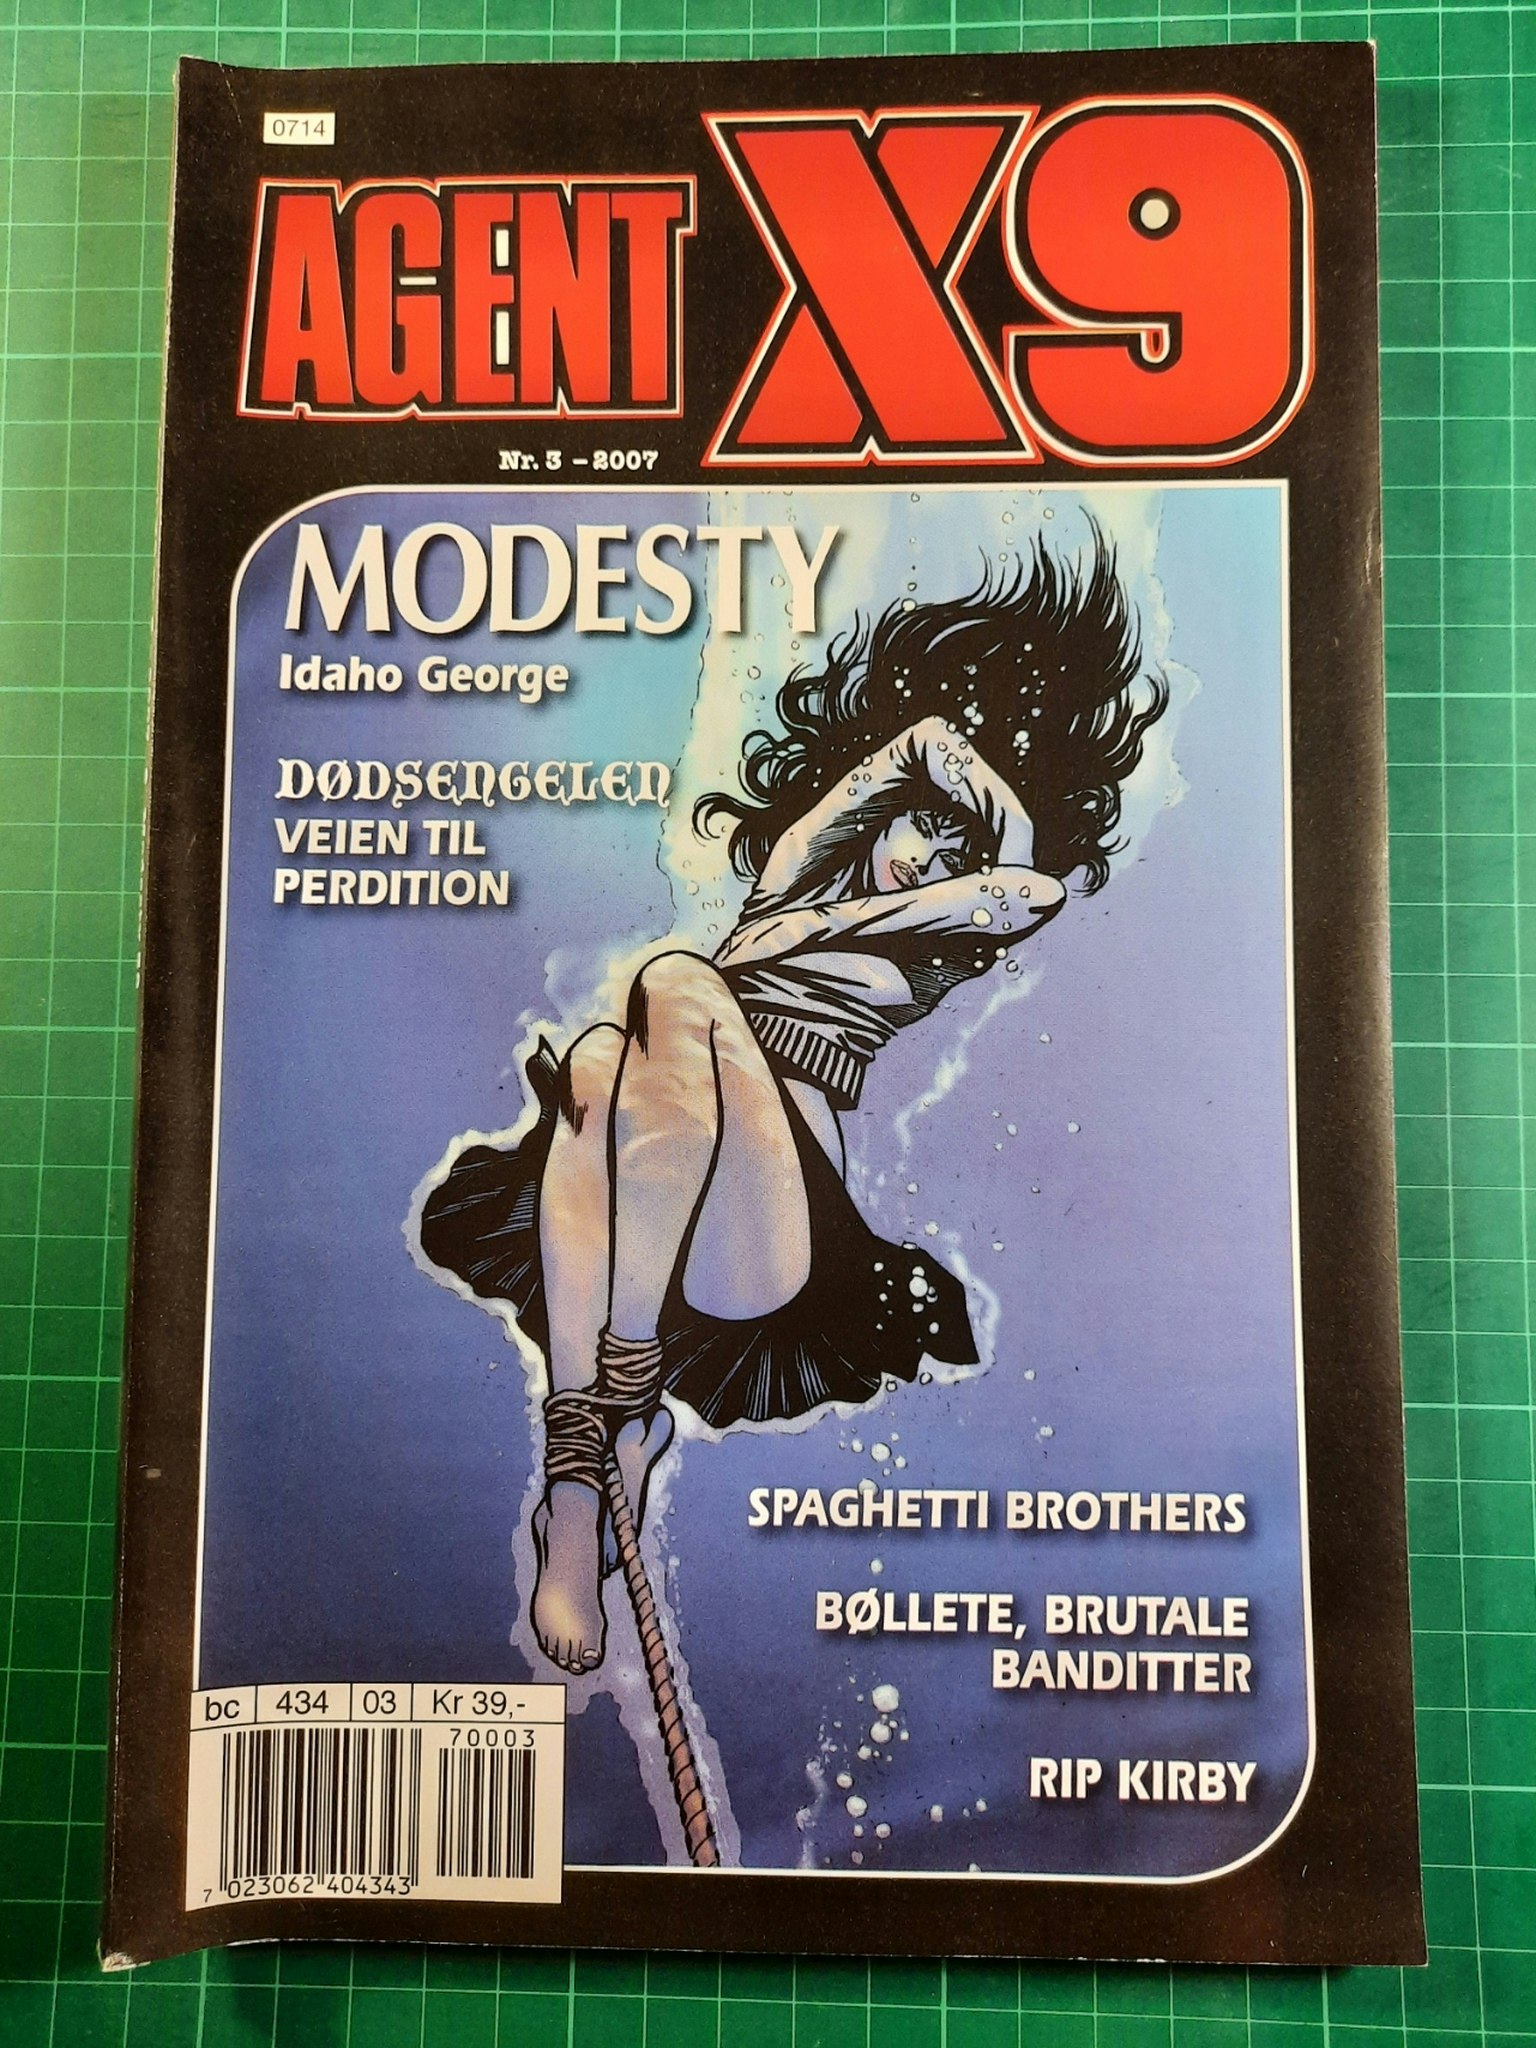 Agent X9 2007 - 03